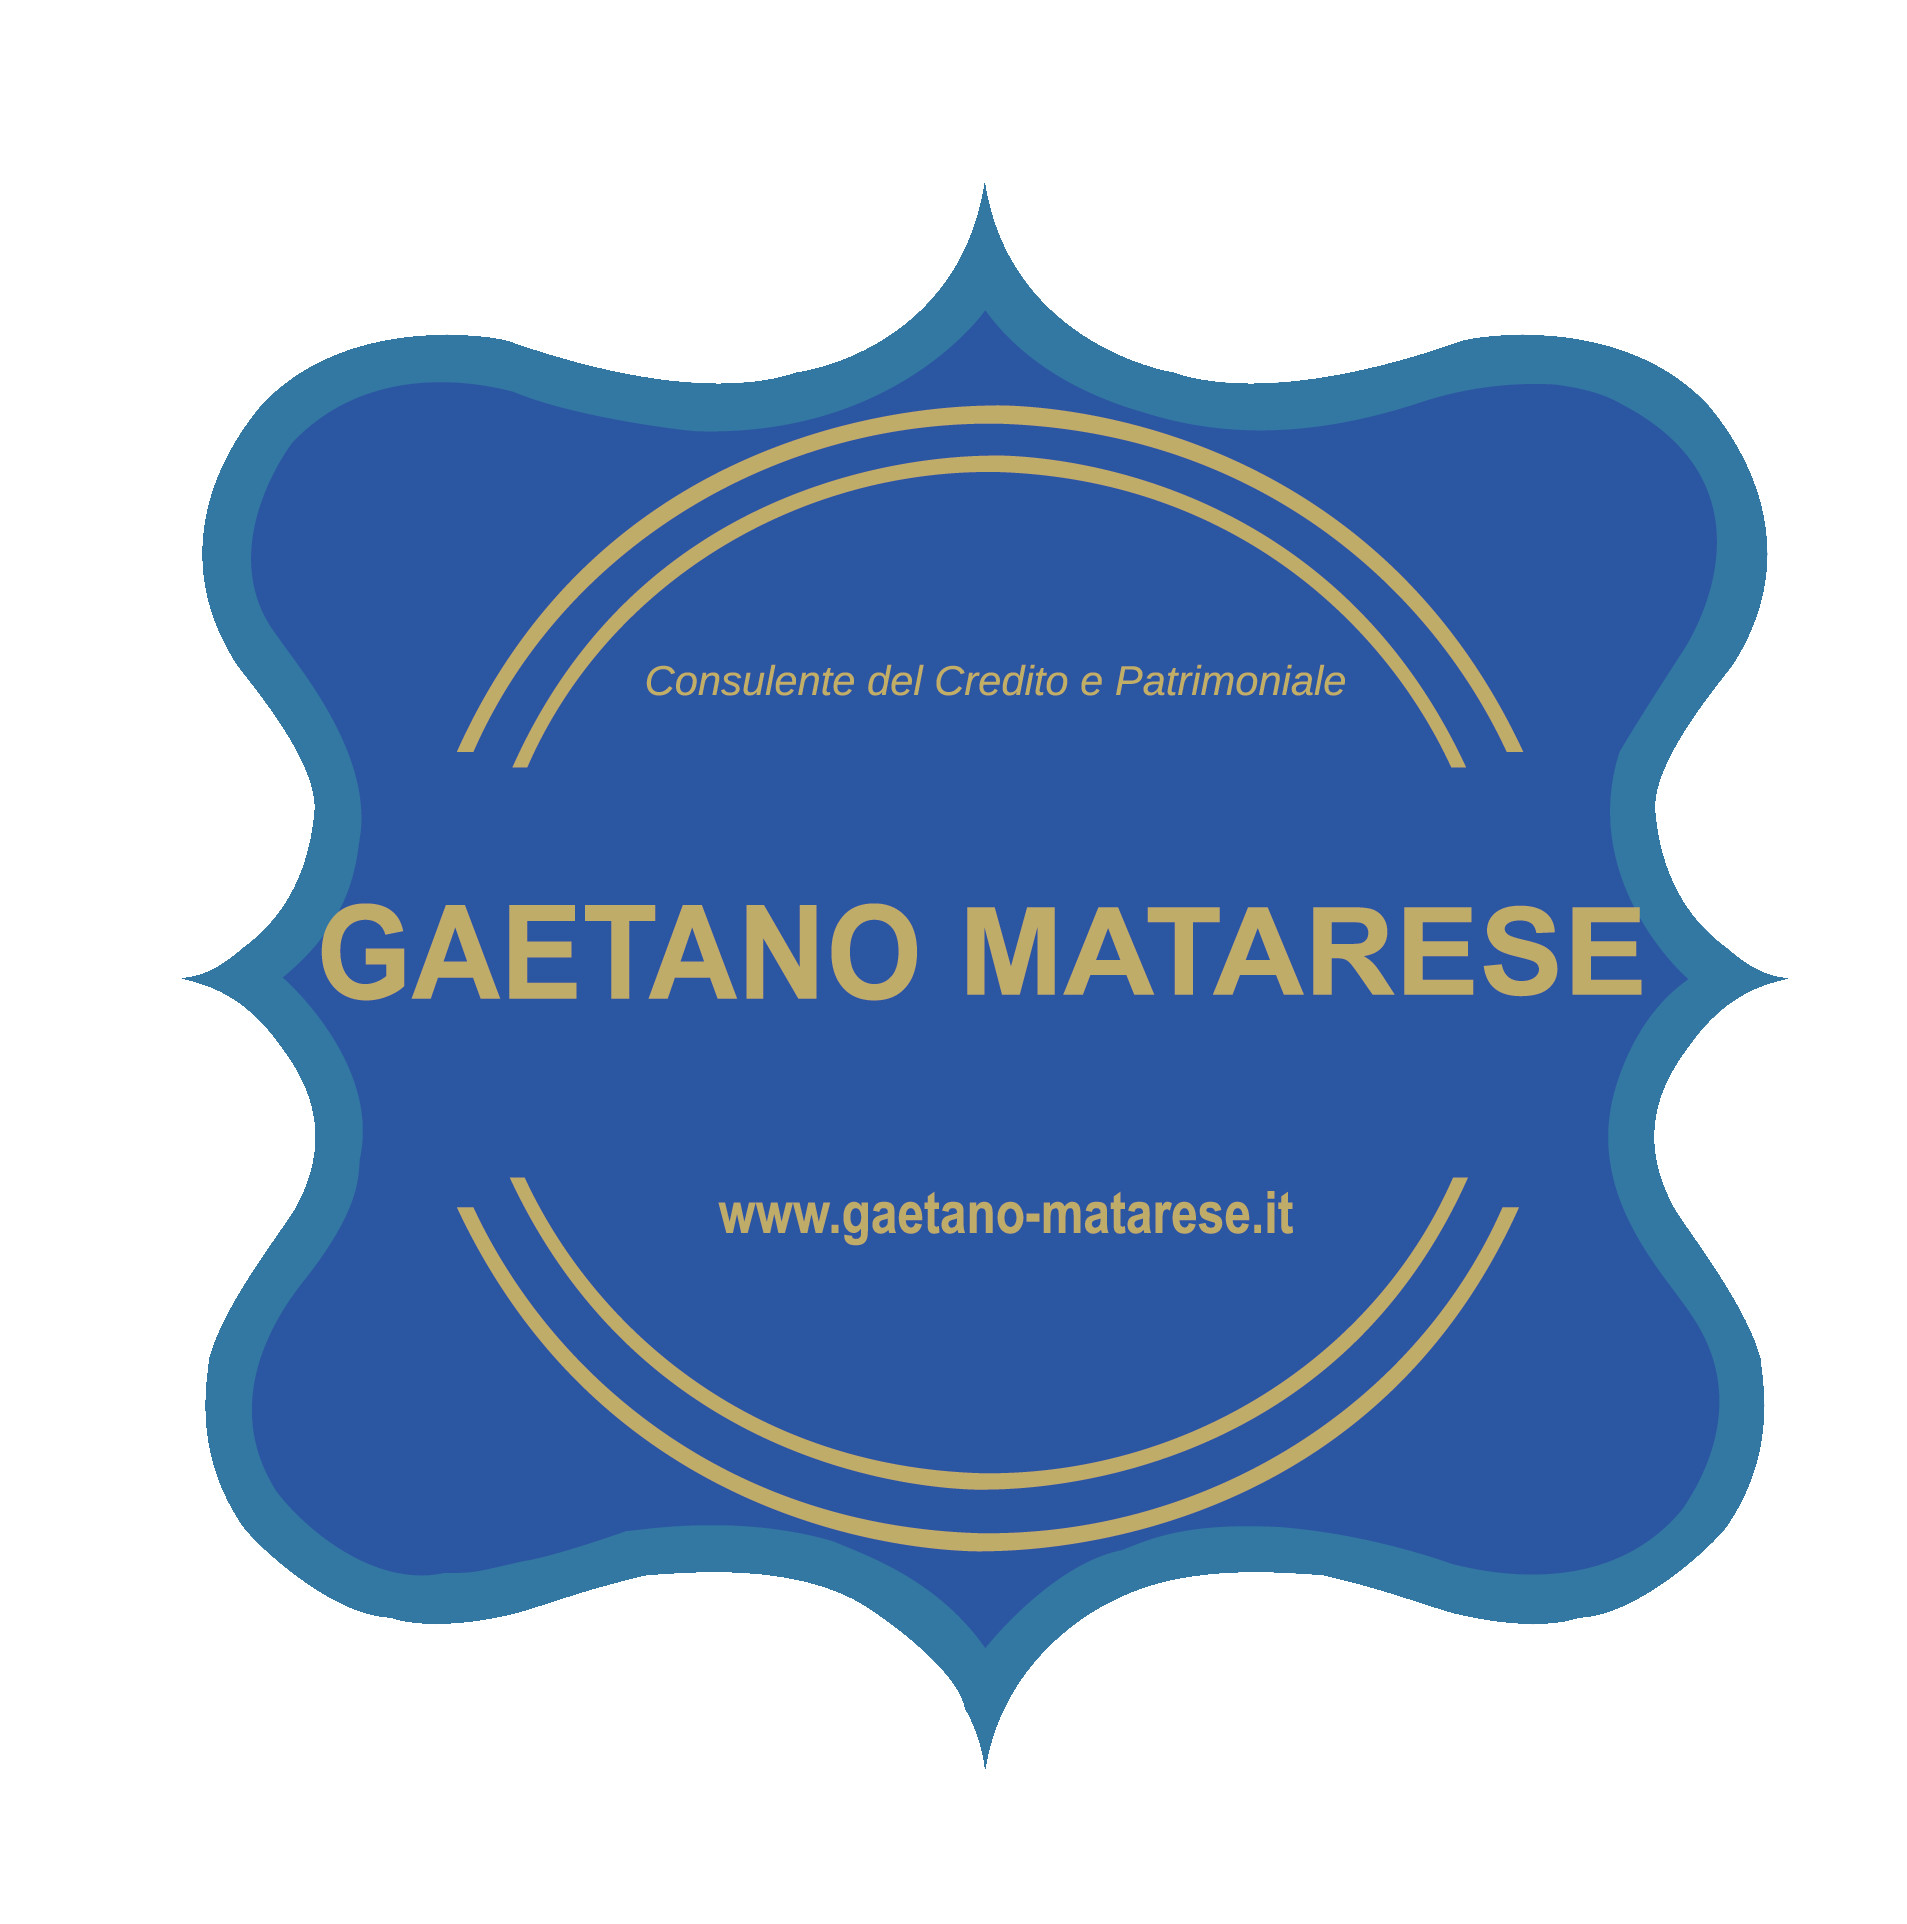 Gaetano Matarese Consulente del Credito e Patrimoniale